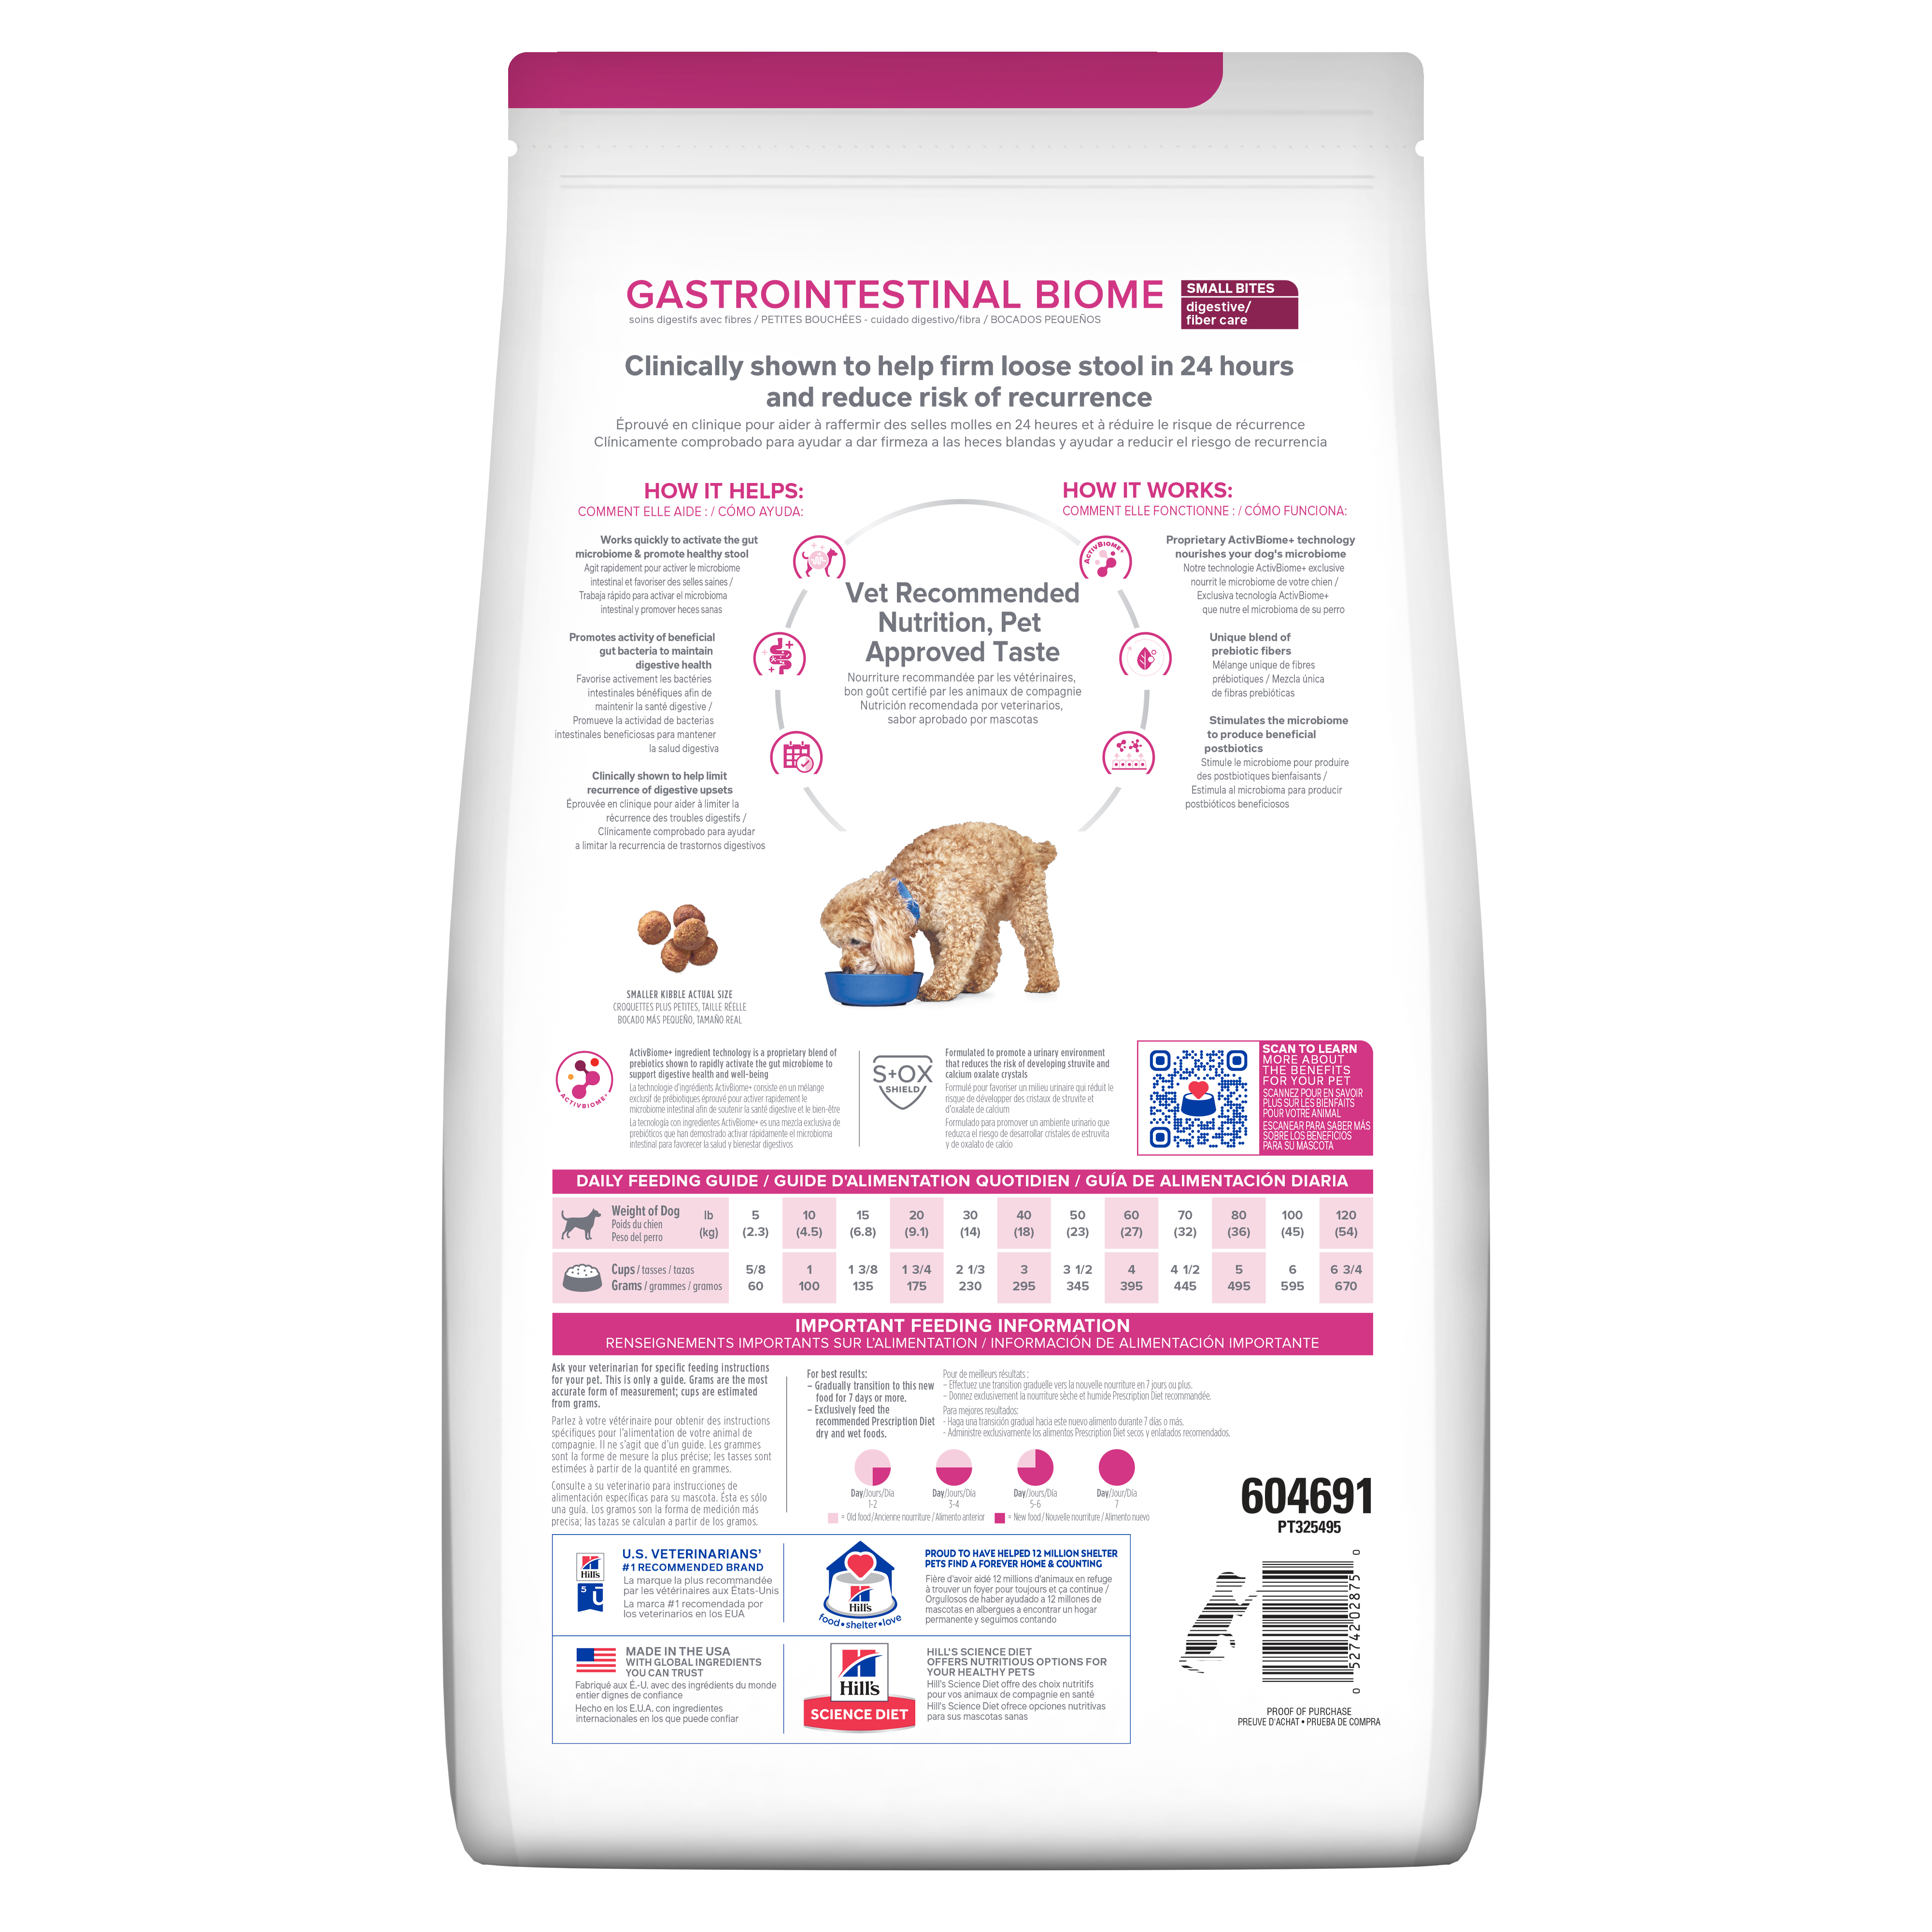 Hill's® Prescription Diet® Gastrointestinal Biome Canine (Small Bites)